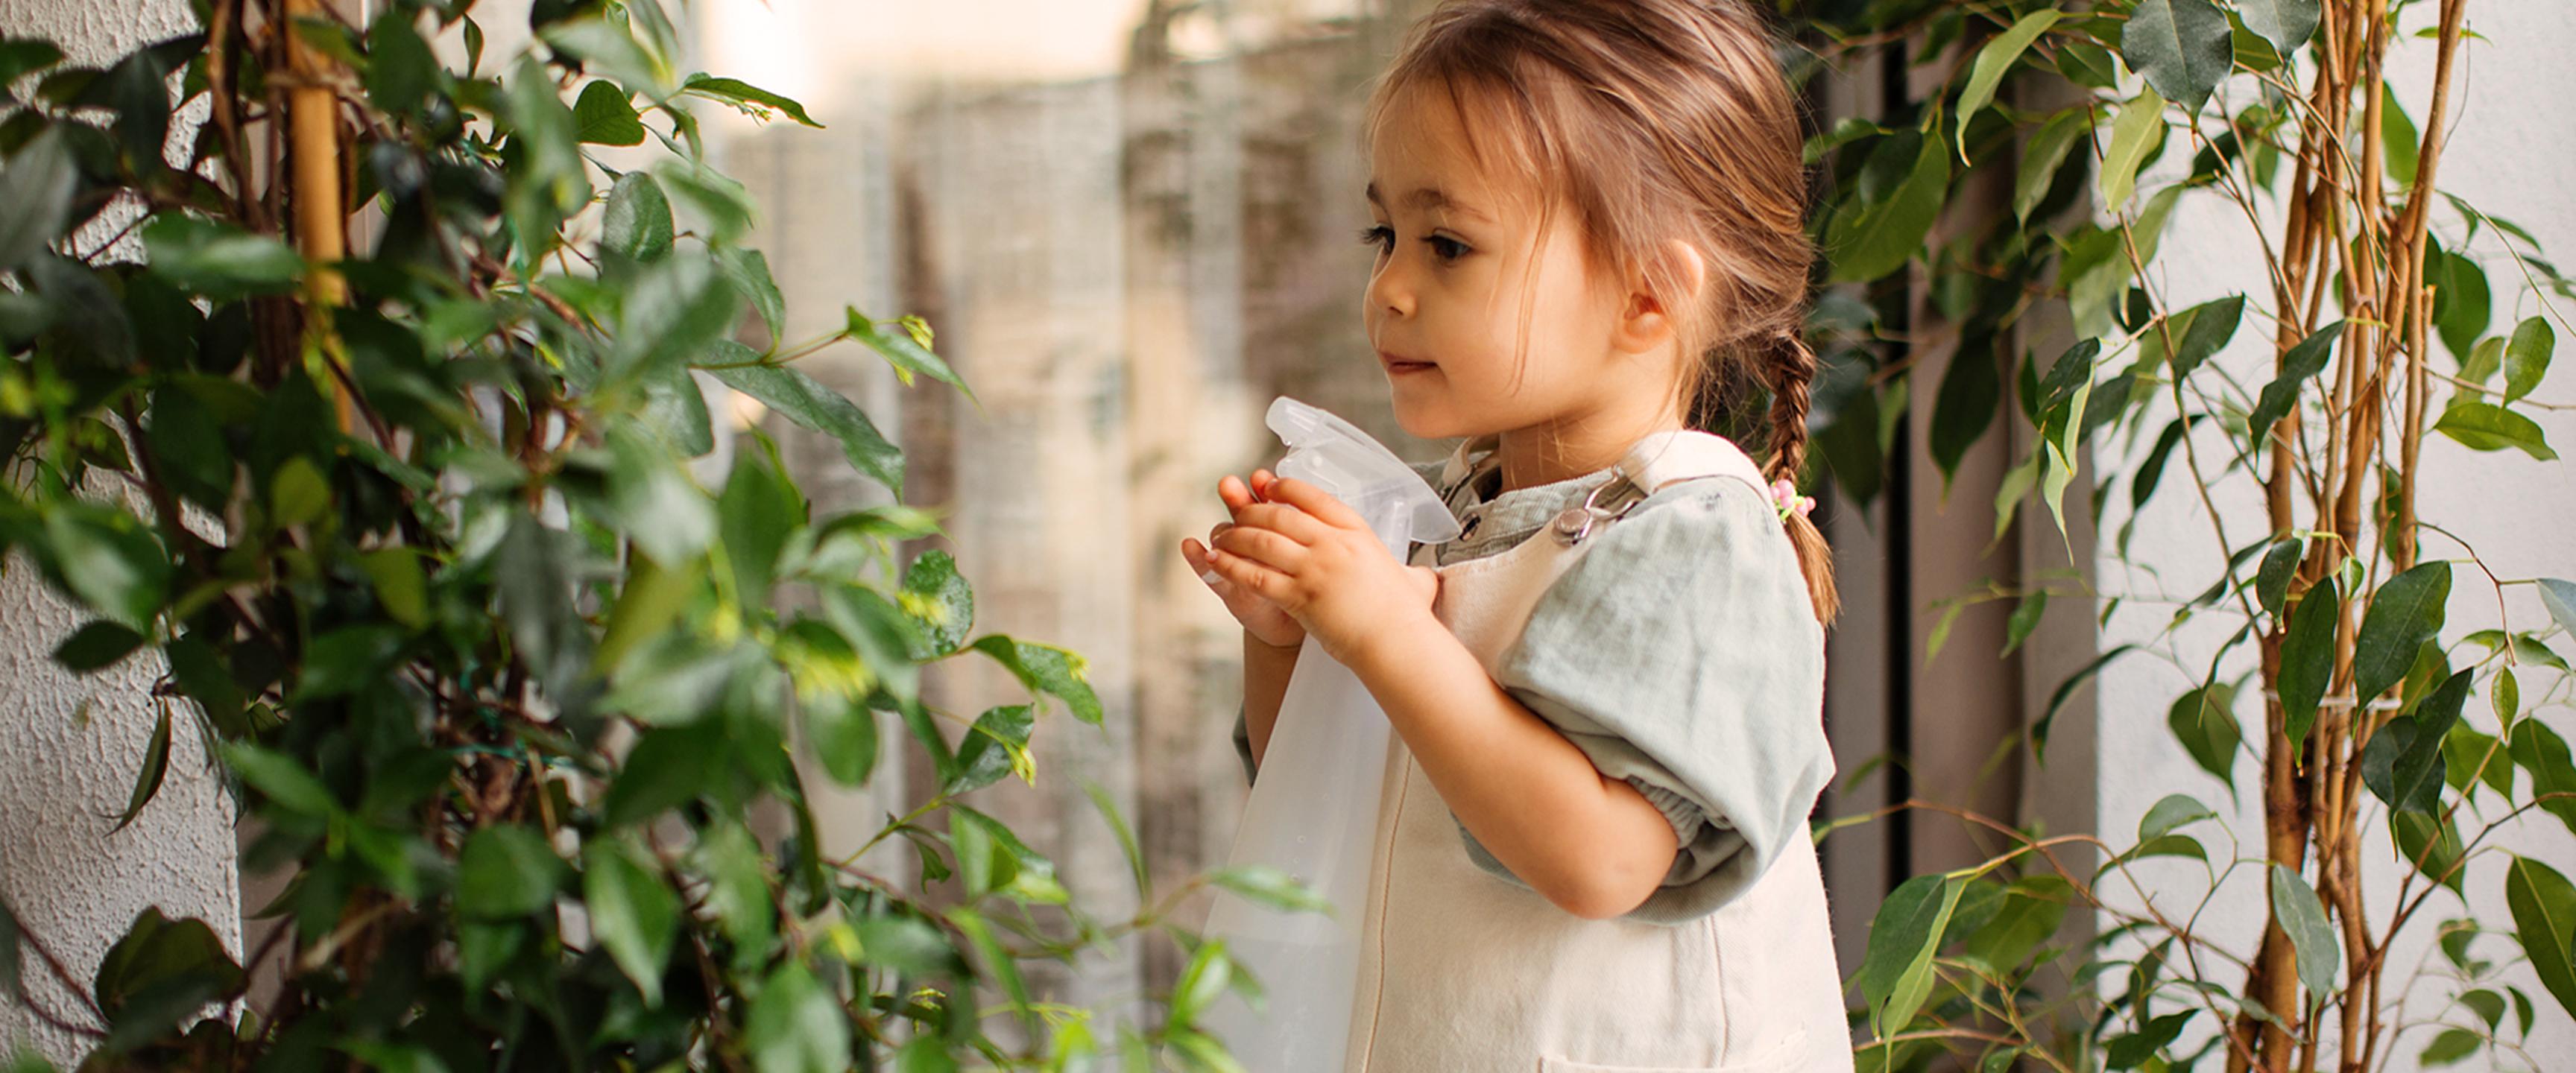 فتاة صغيرة تسقي النباتات بزجاجة رذاذ.